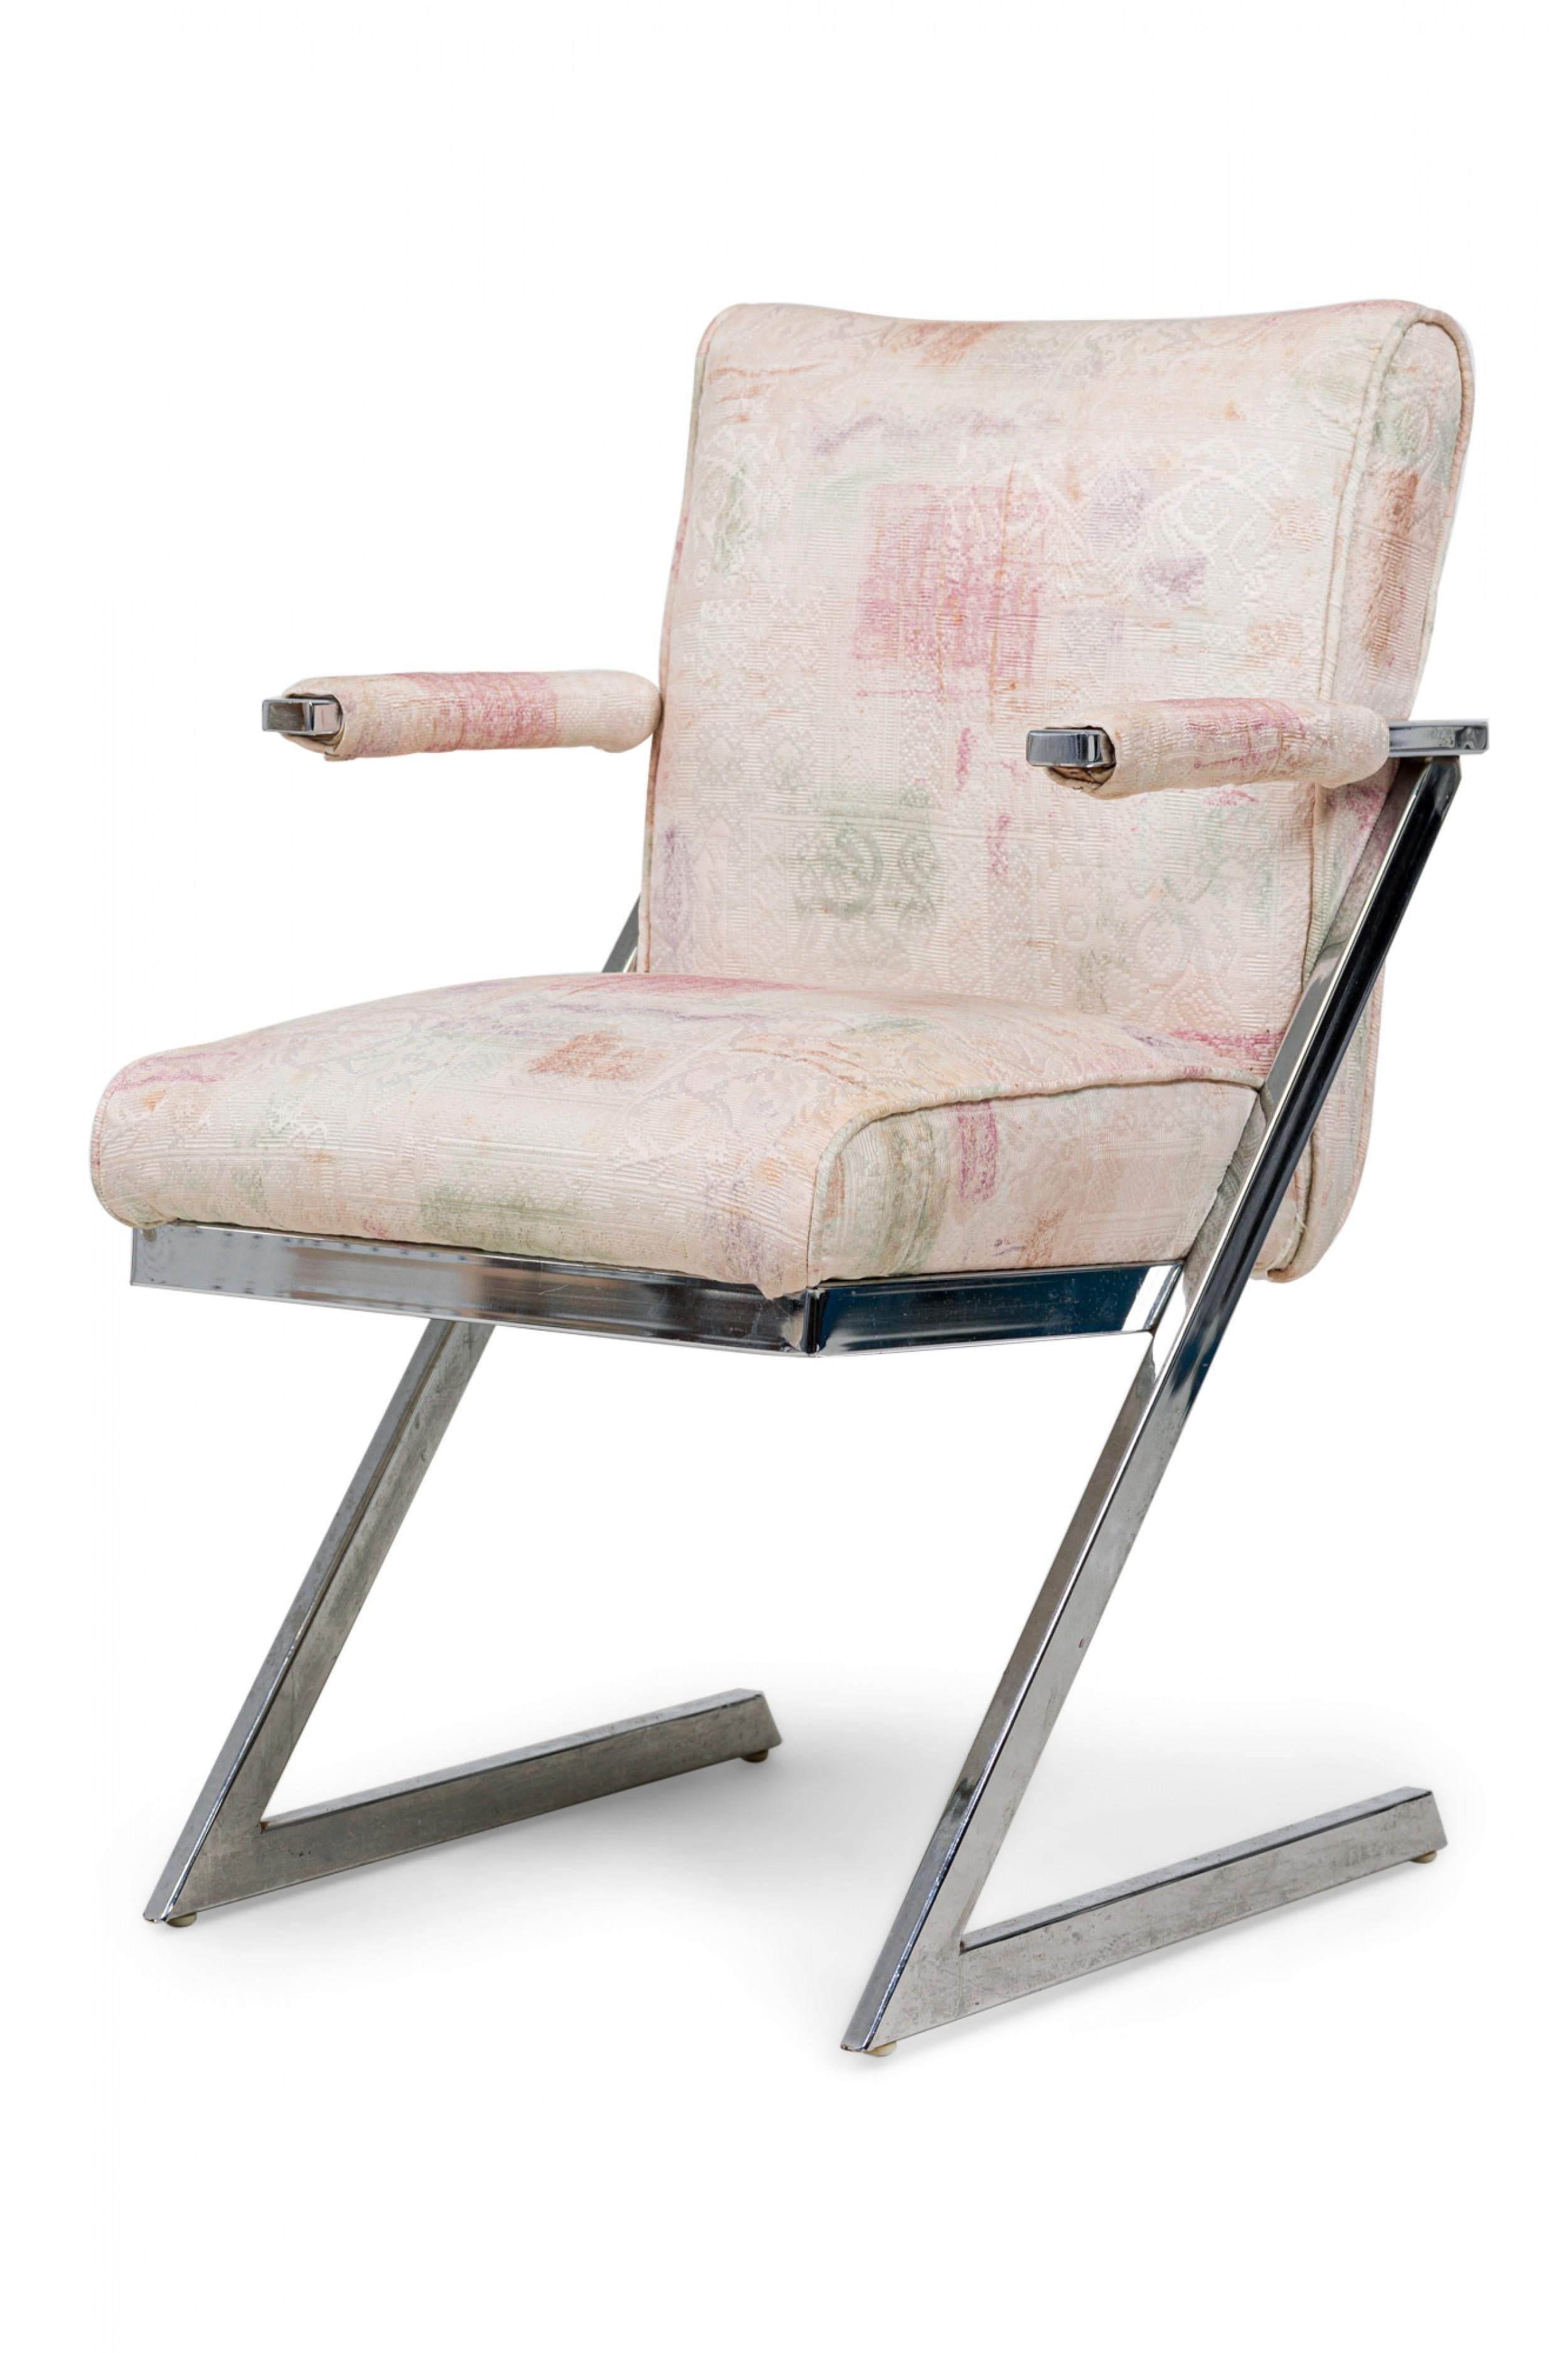 SET aus 6 amerikanischen Z Chairs aus der Jahrhundertmitte (1980er Jahre) (2 Sessel, 4 Beistellstühle) aus freitragendem verchromtem Flachstahl, gepolstert mit einem strukturierten beigen Stoff mit gedämpften Braun-, Grün- und Rosa-Tönen. (DESIGN